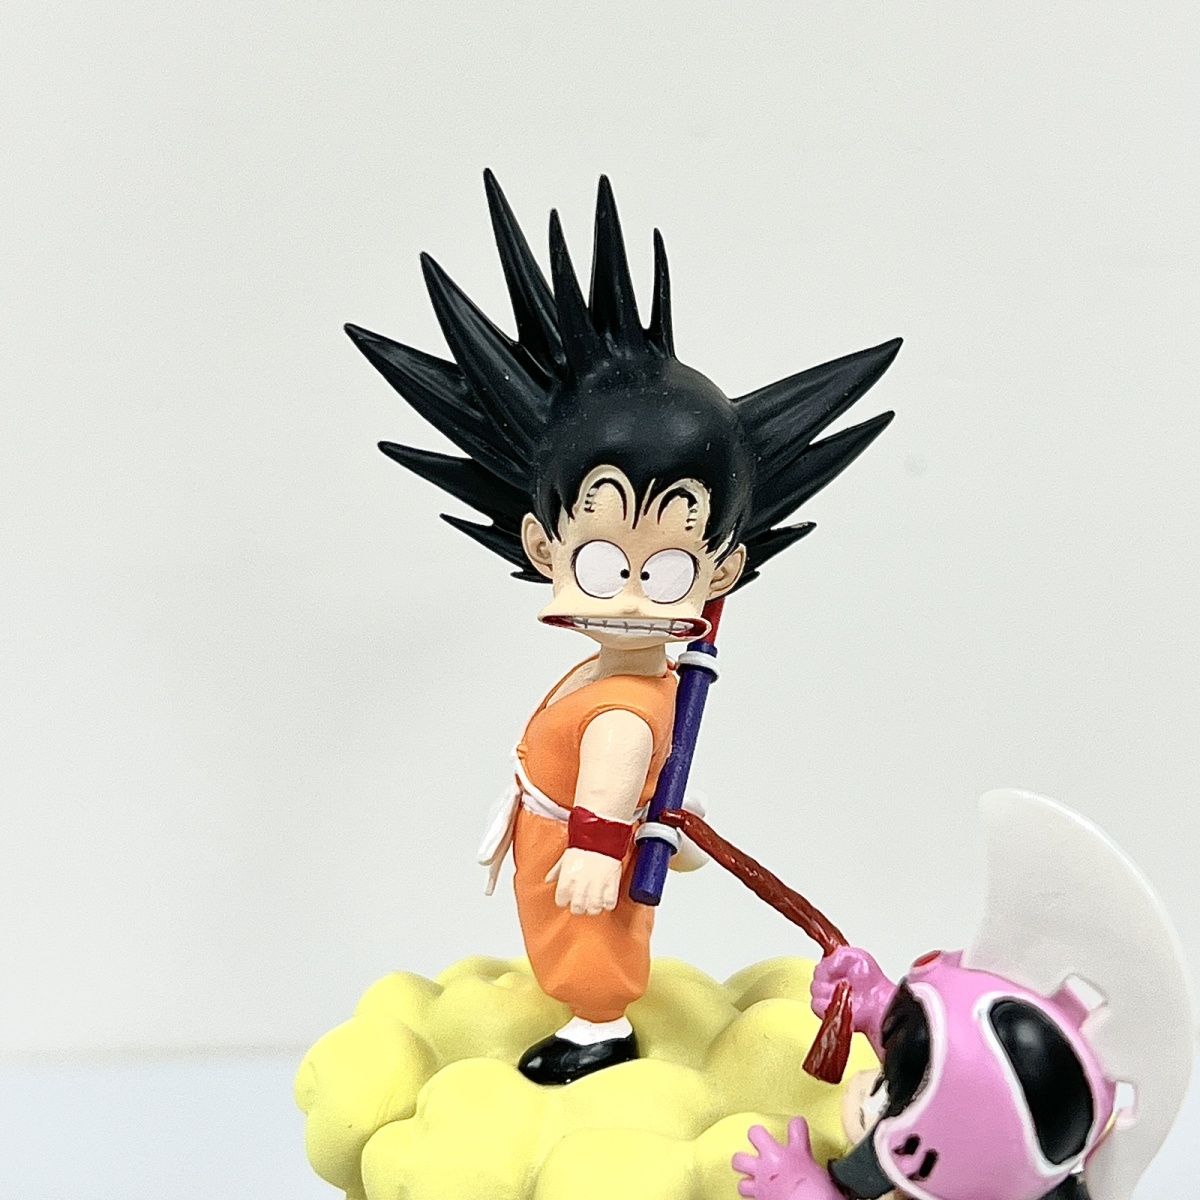 Dragon Ball Sun Goku Chichi funny Action Figure